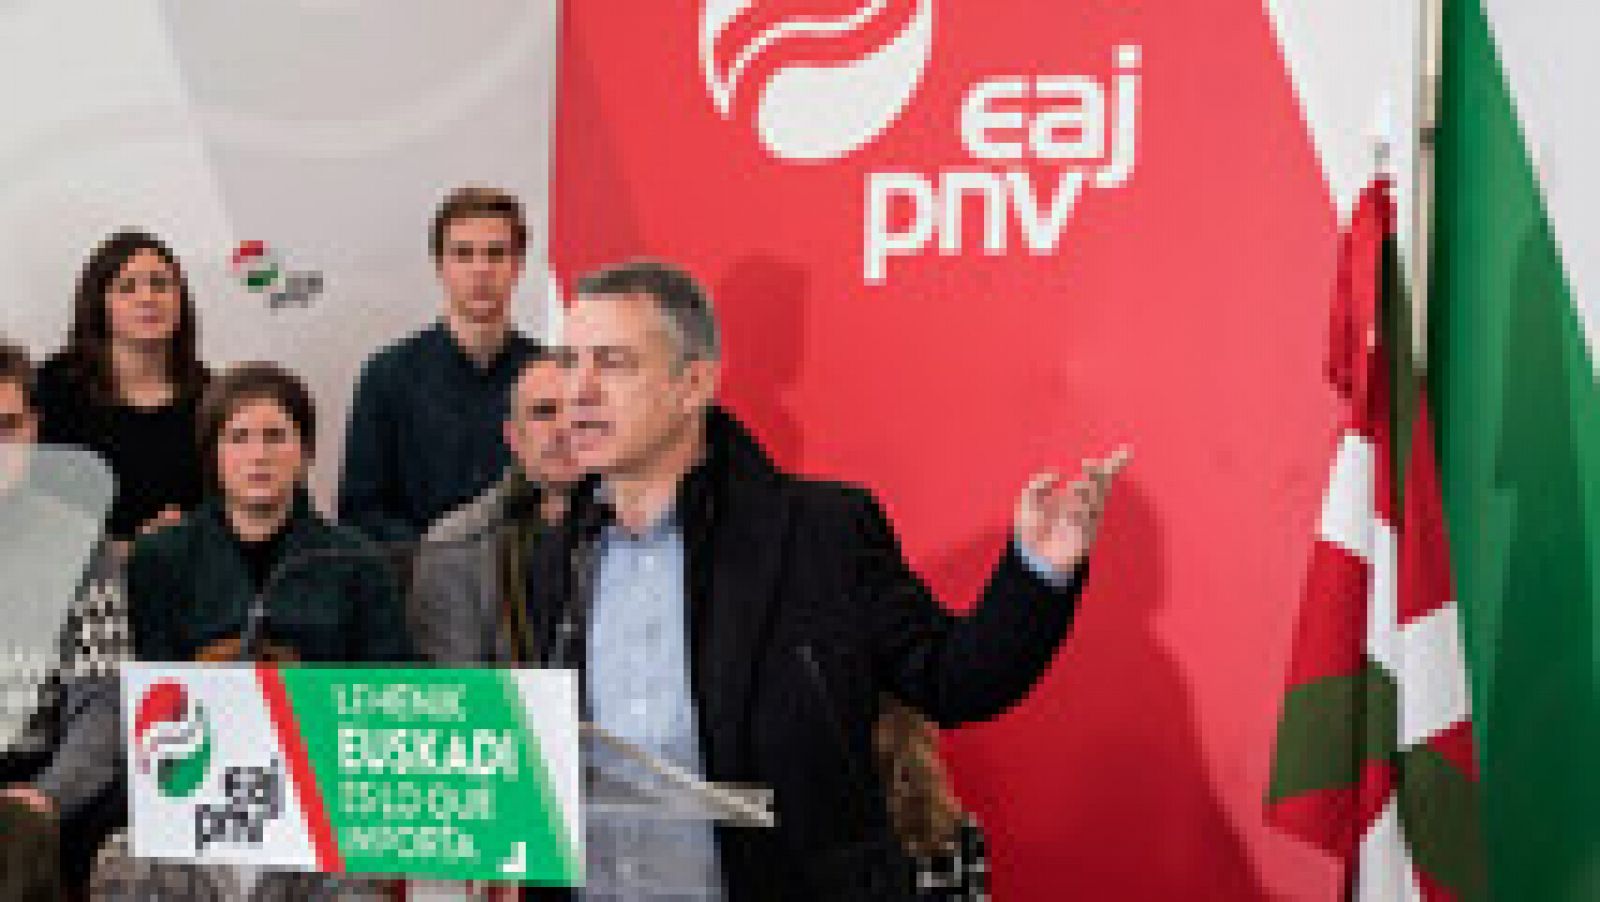 Elecciones generales 20D - El PNV pide el voto para frenar una coalición PP-Ciudadanos